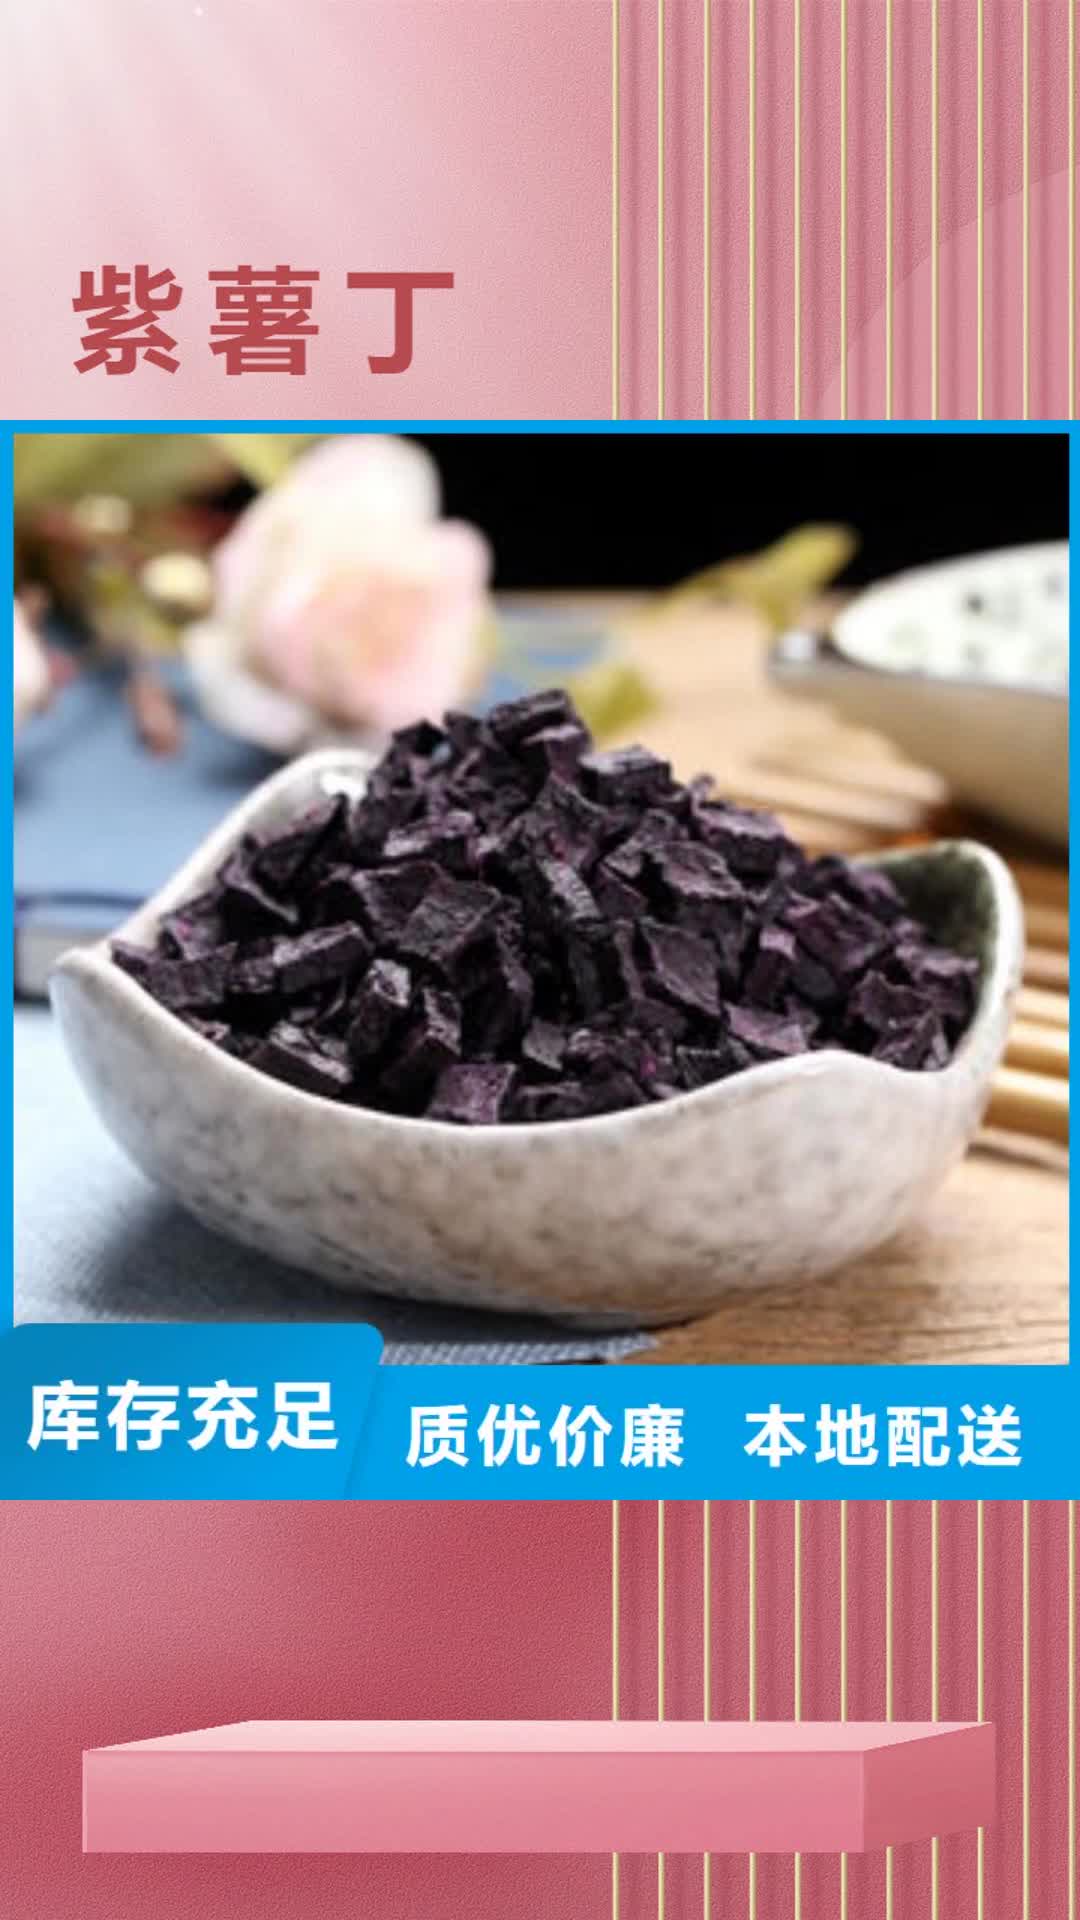 海北【紫薯丁】,红薯粉厂家全新升级品质保障